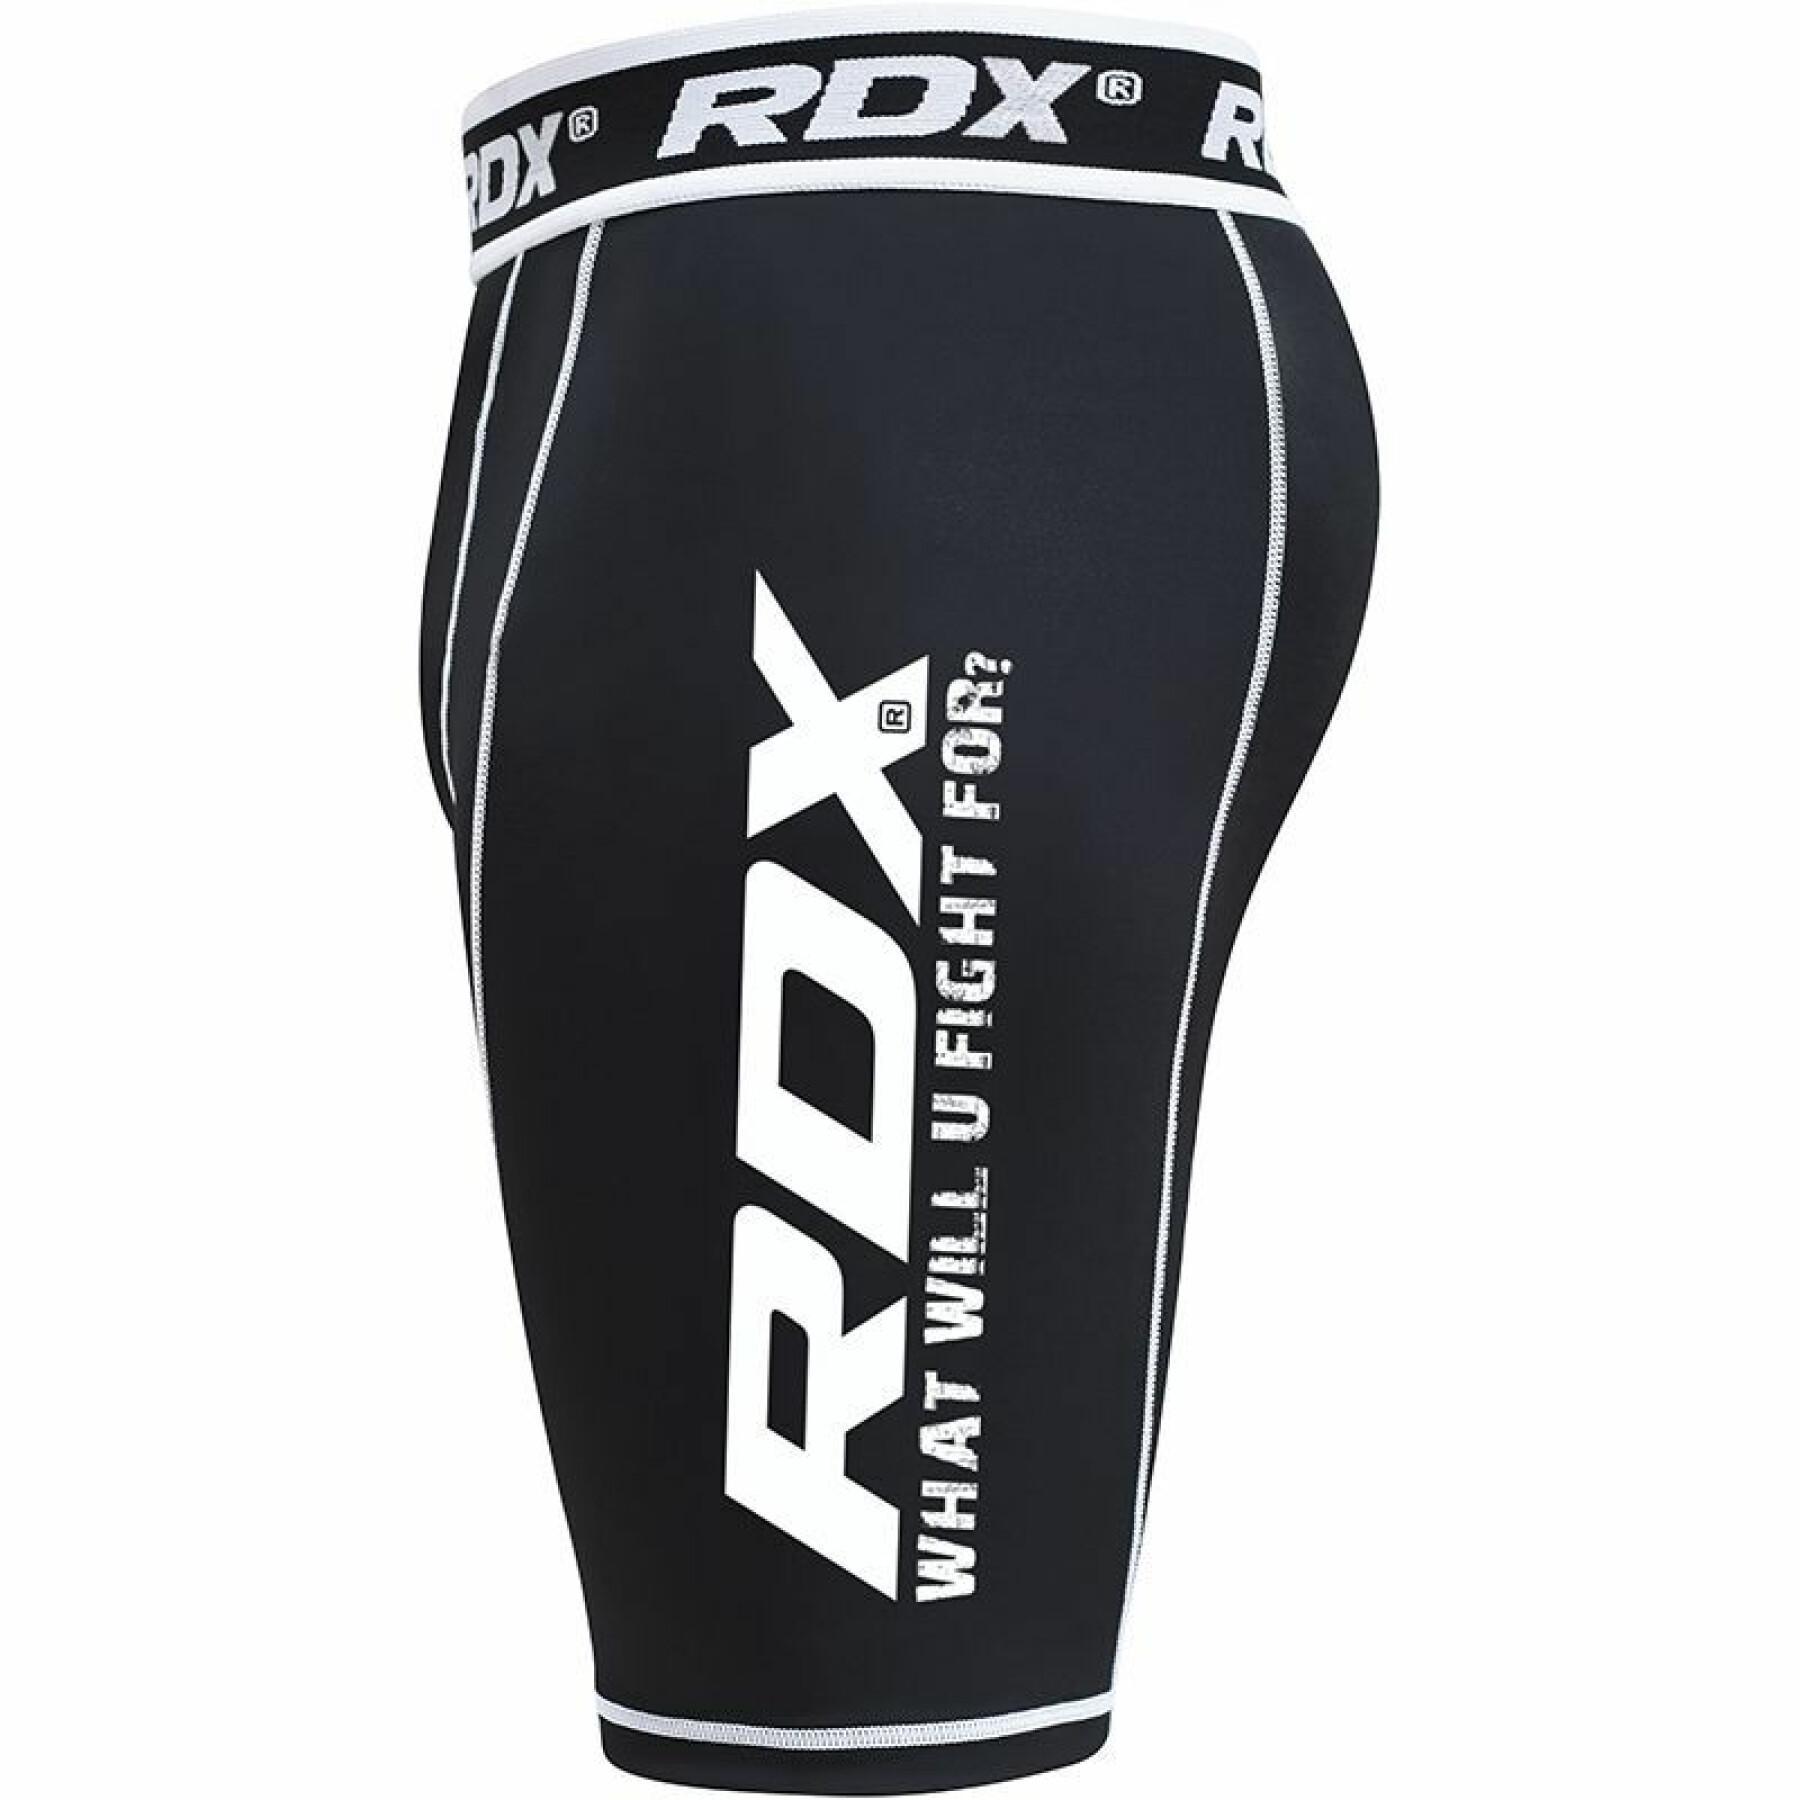 Pantalones cortos de compresión RDX X14